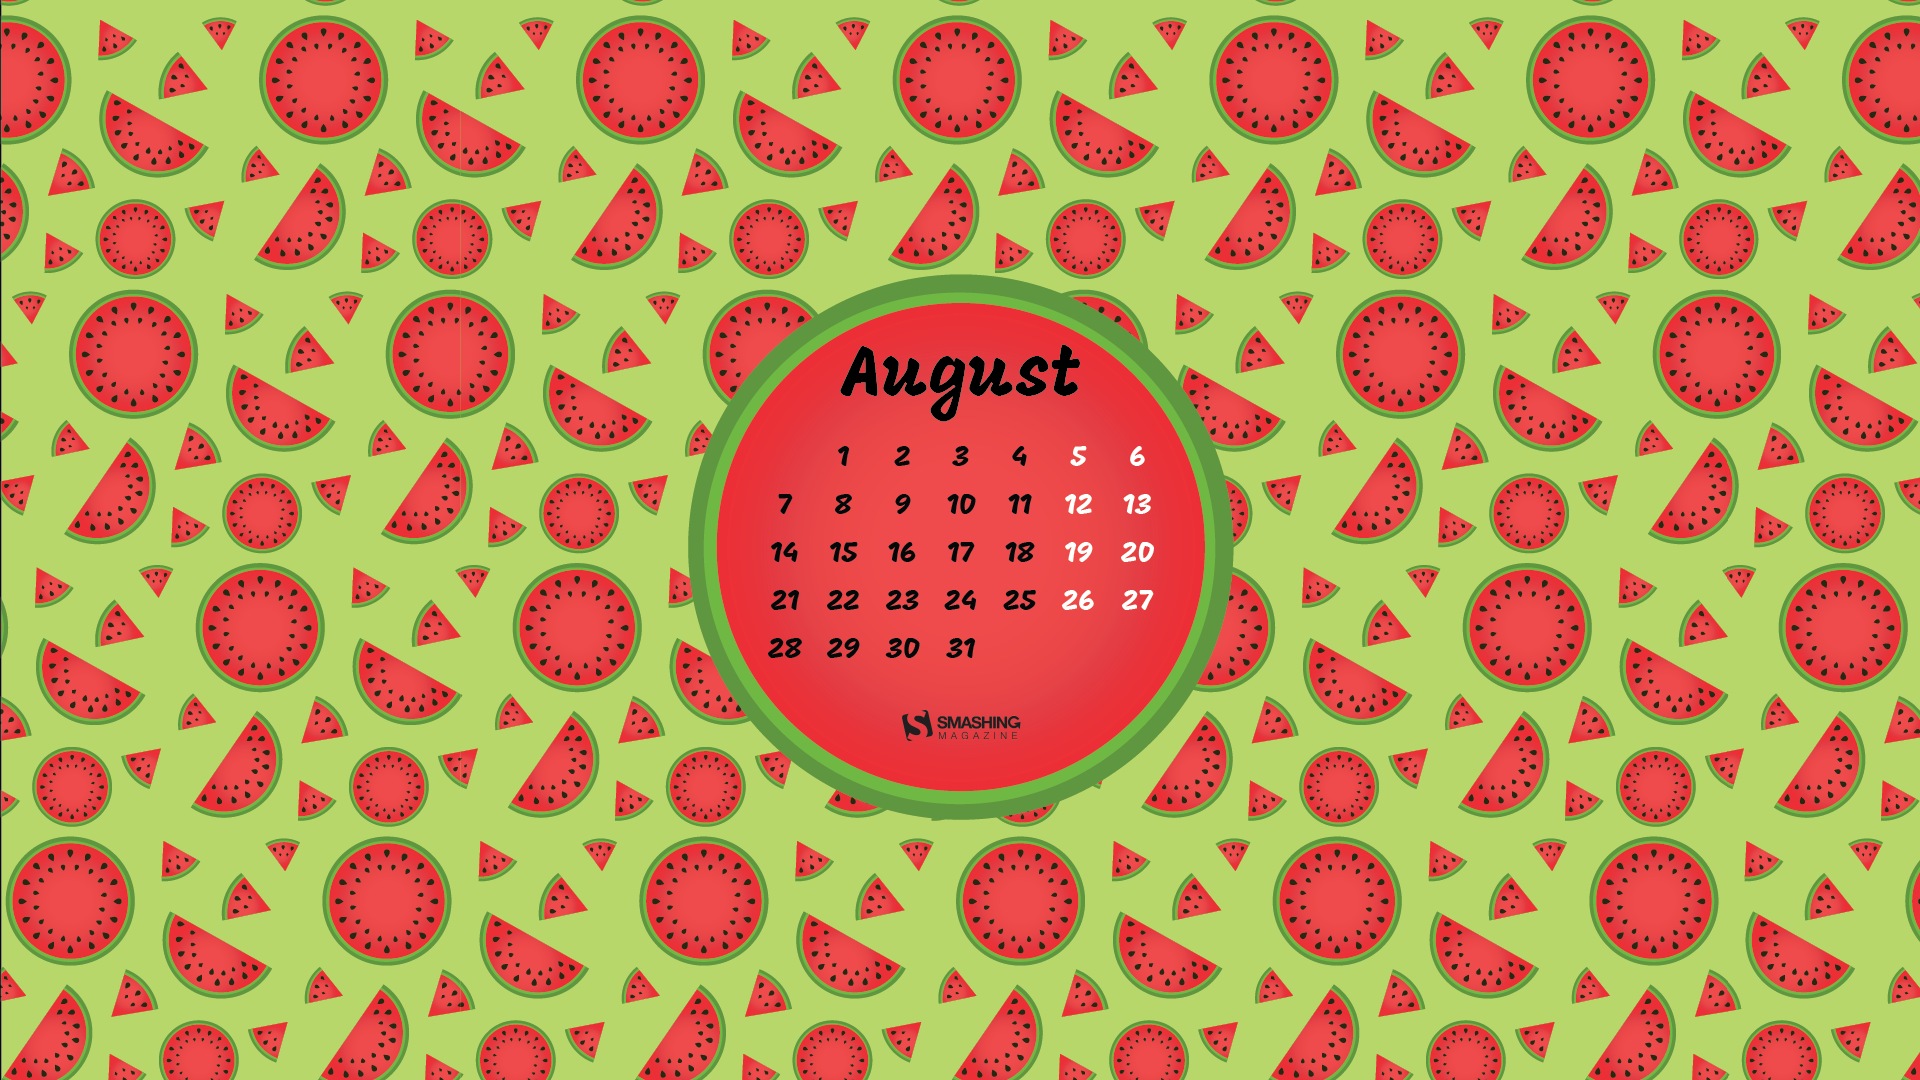 August 2017 calendar wallpaper #17 - 1920x1080